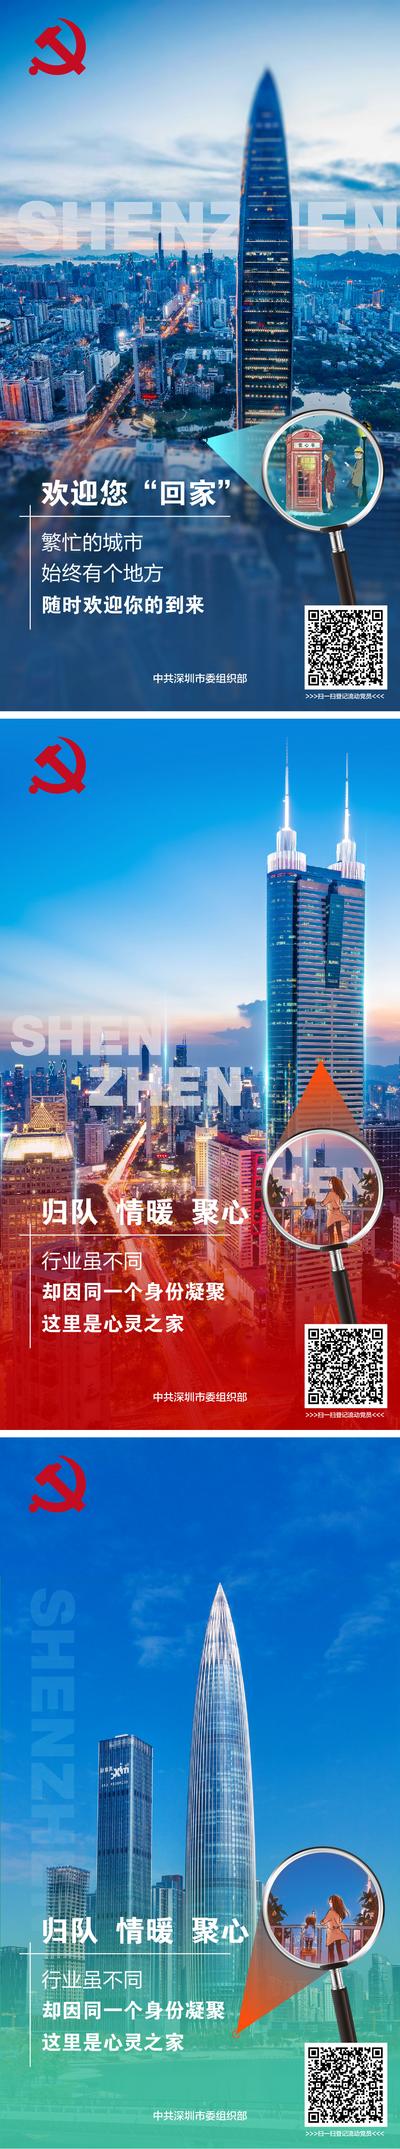 南门网 广告 海报 党建 文明 城市 治理 卫生 环卫 环保 温暖 亲情 热情 地标